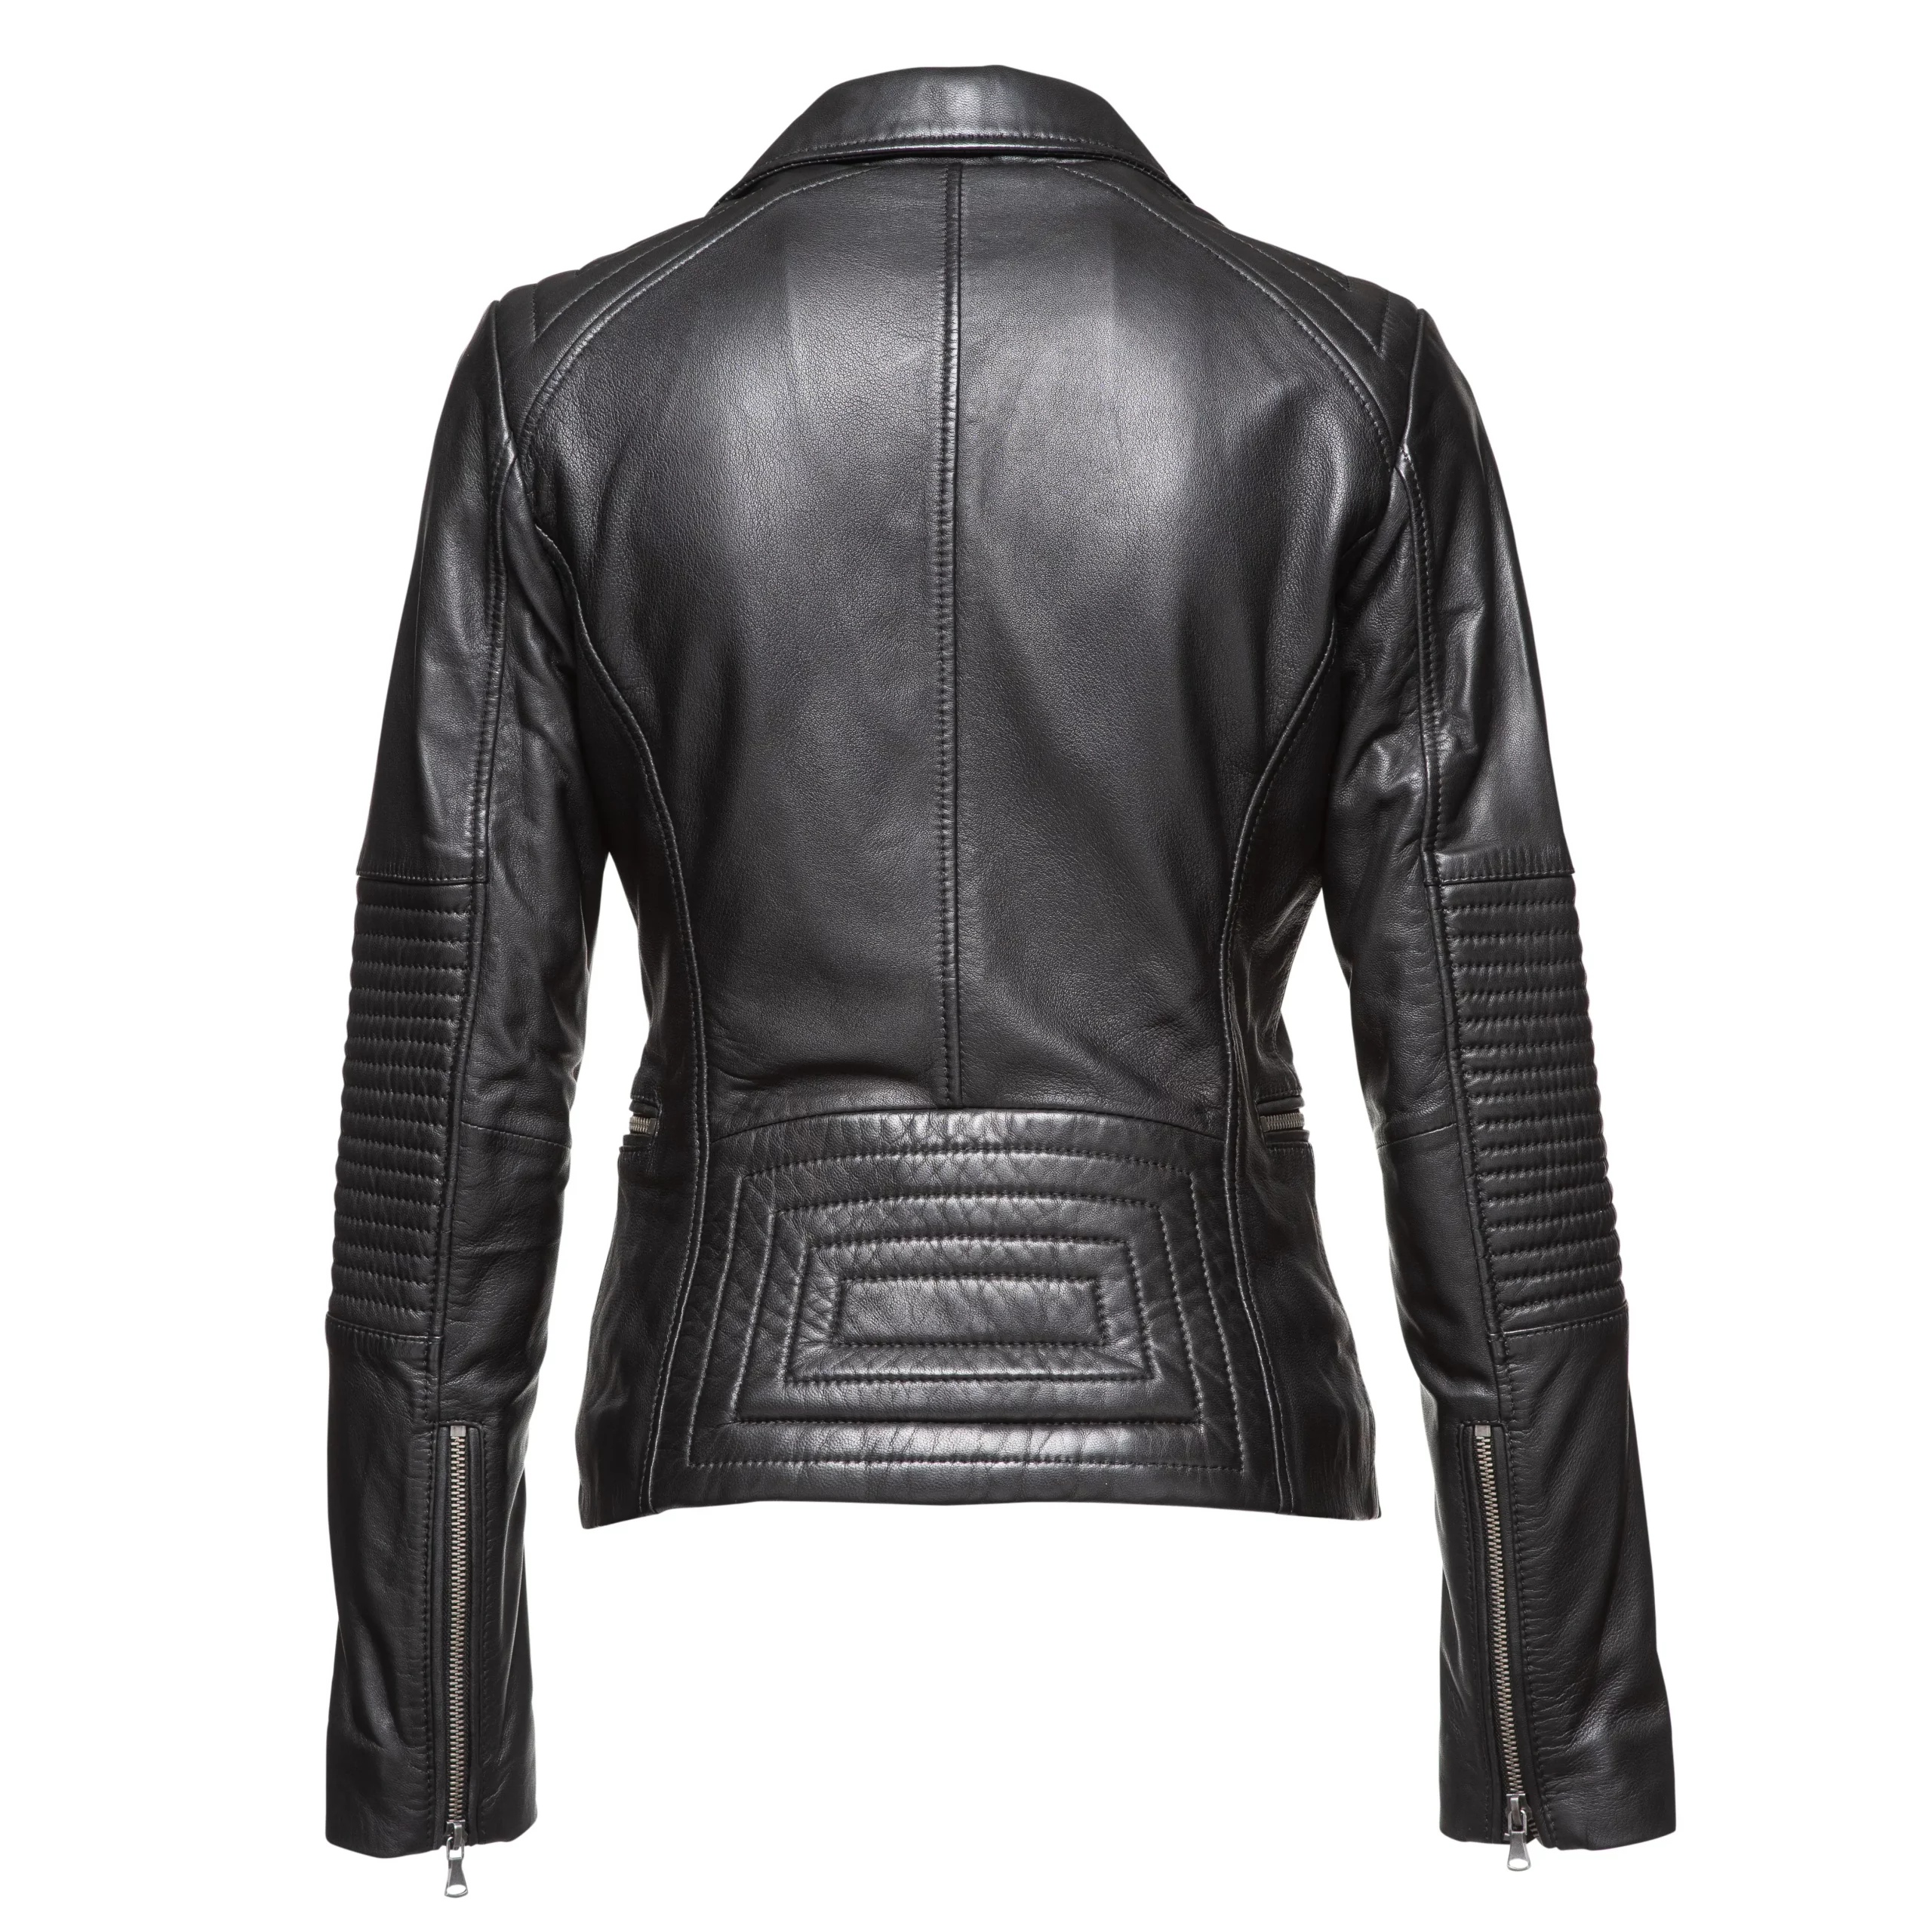 Elizabeth Ladies Leather Jacket1 Scaled 1